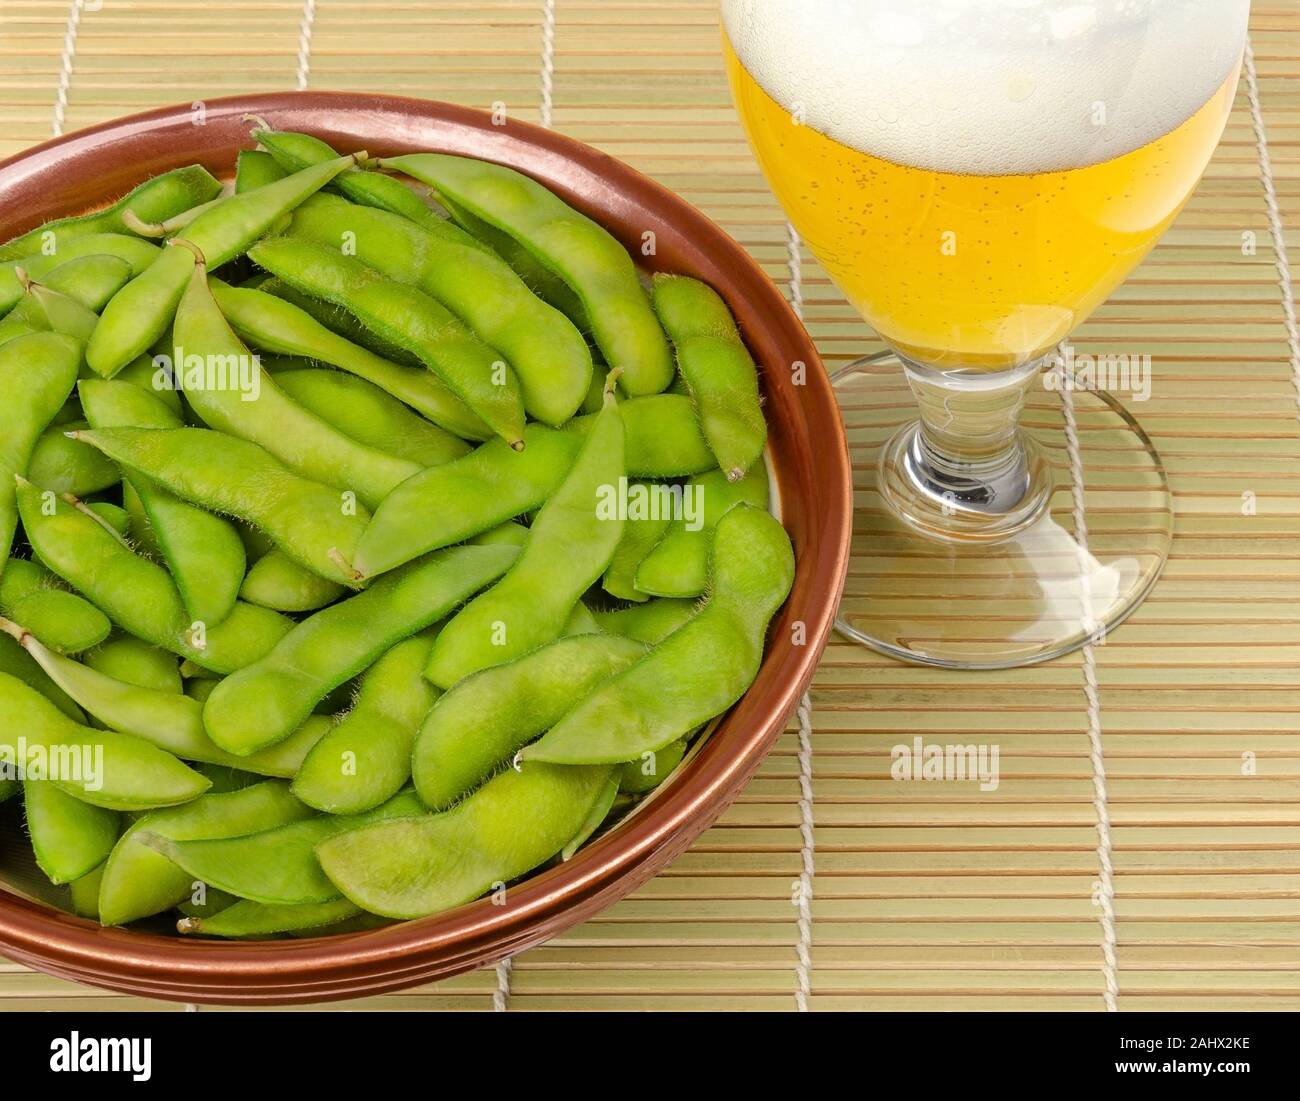 Edamame cuites dans un bol avec un verre de bière sur le tapis de bambou. Le soja vert, maodou, cuits dans l'eau salée. Accompagnement et de délicieux en-cas. Les fèves de soja. Banque D'Images